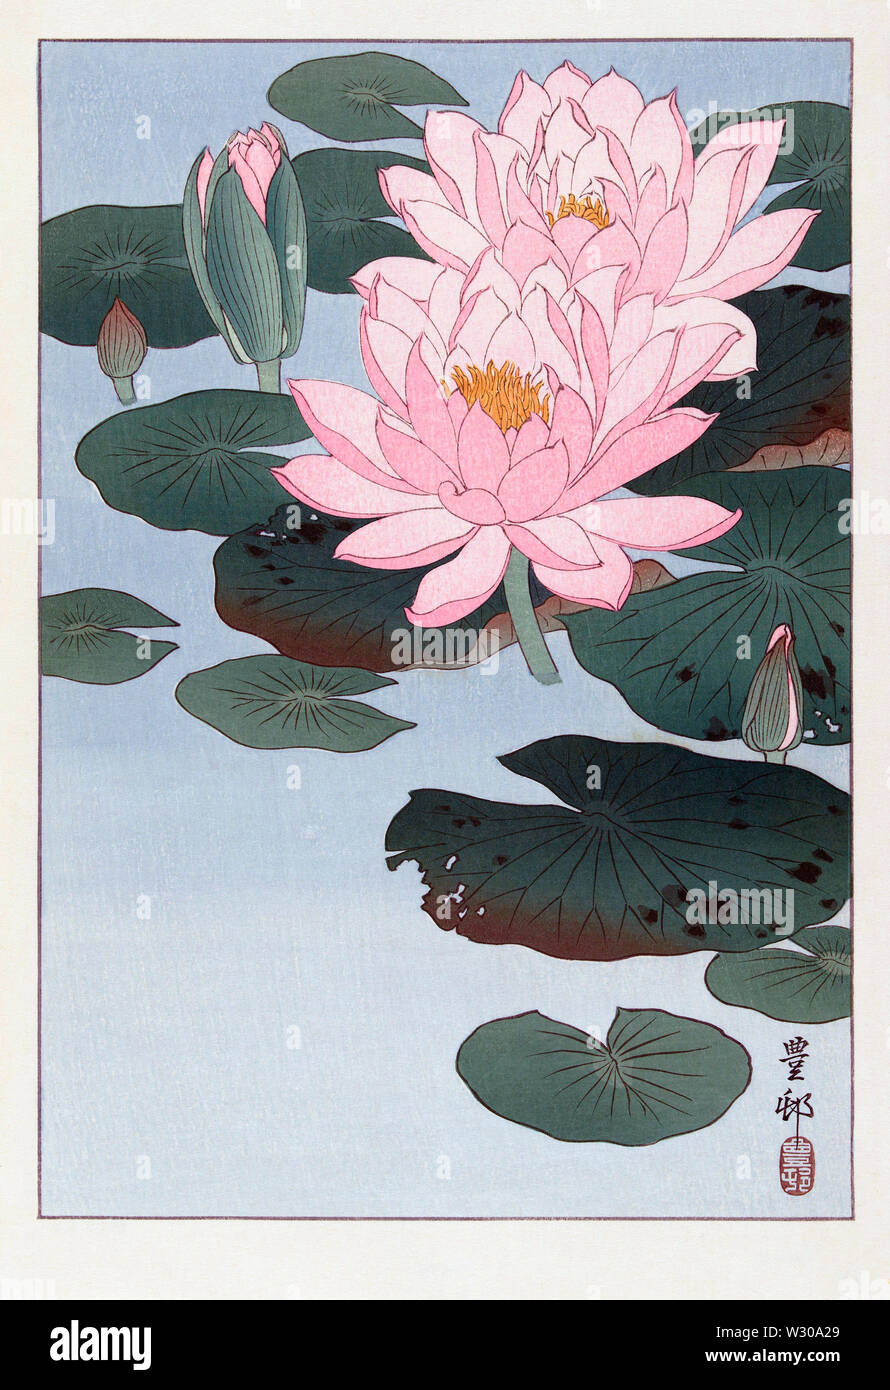 La fioritura del giglio d'acqua. Dopo una stampa dall'artista giapponese Ohara Koson, 1877 - 1945. Egli era nato Matao Ohara e firmato il suo lavoro Koson e successivamente Shōson. Foto Stock